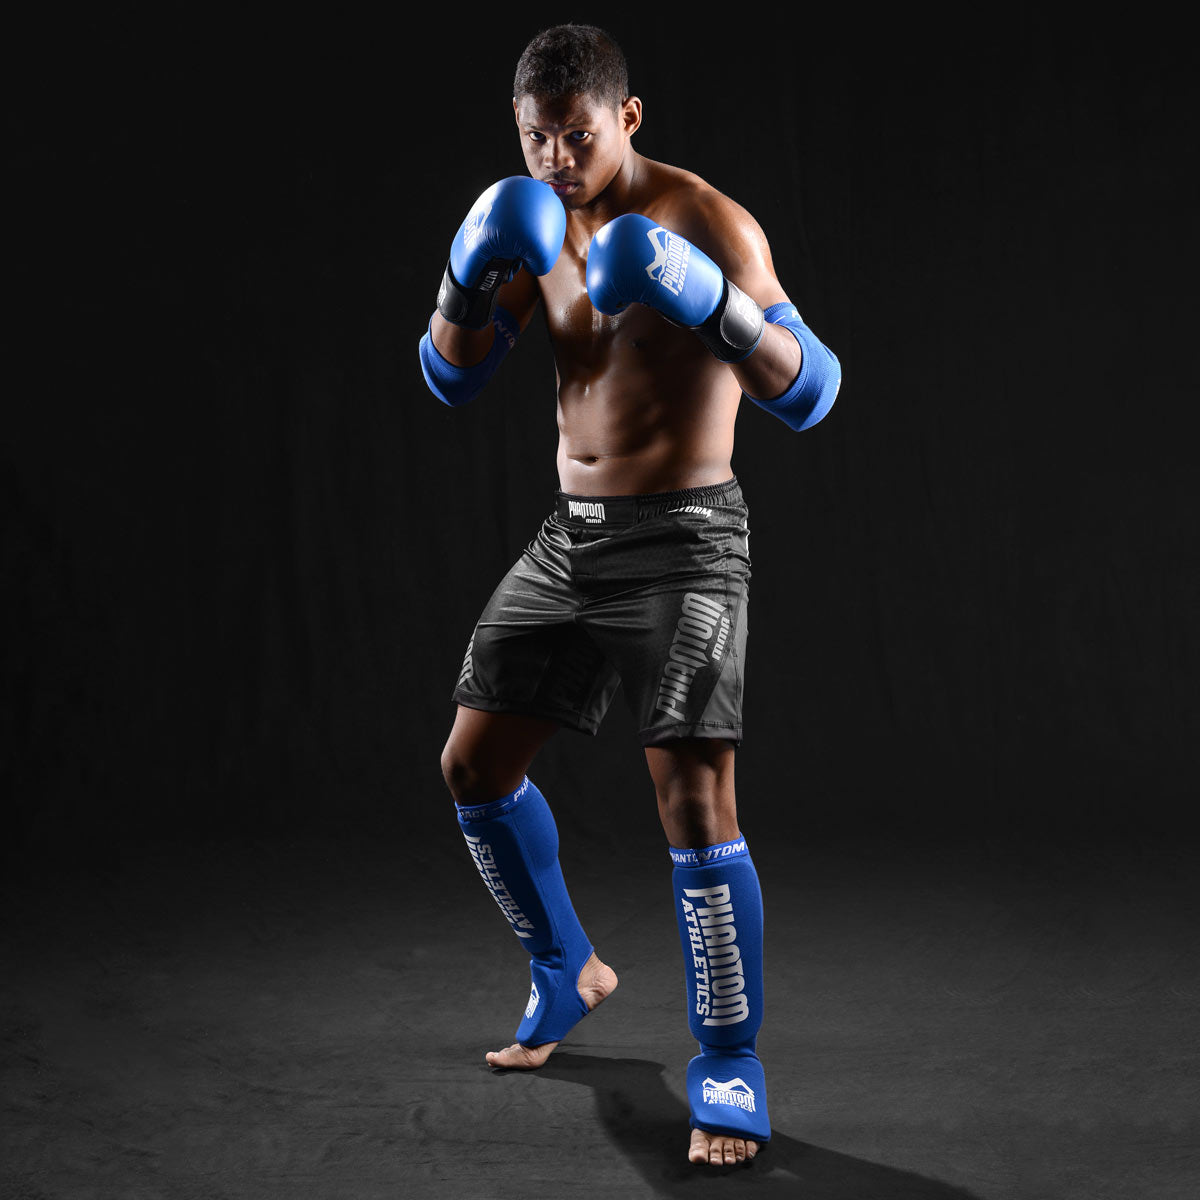 MMA Fighter im Training mit den Phantom Impact Schienbeinschonern in Blau.